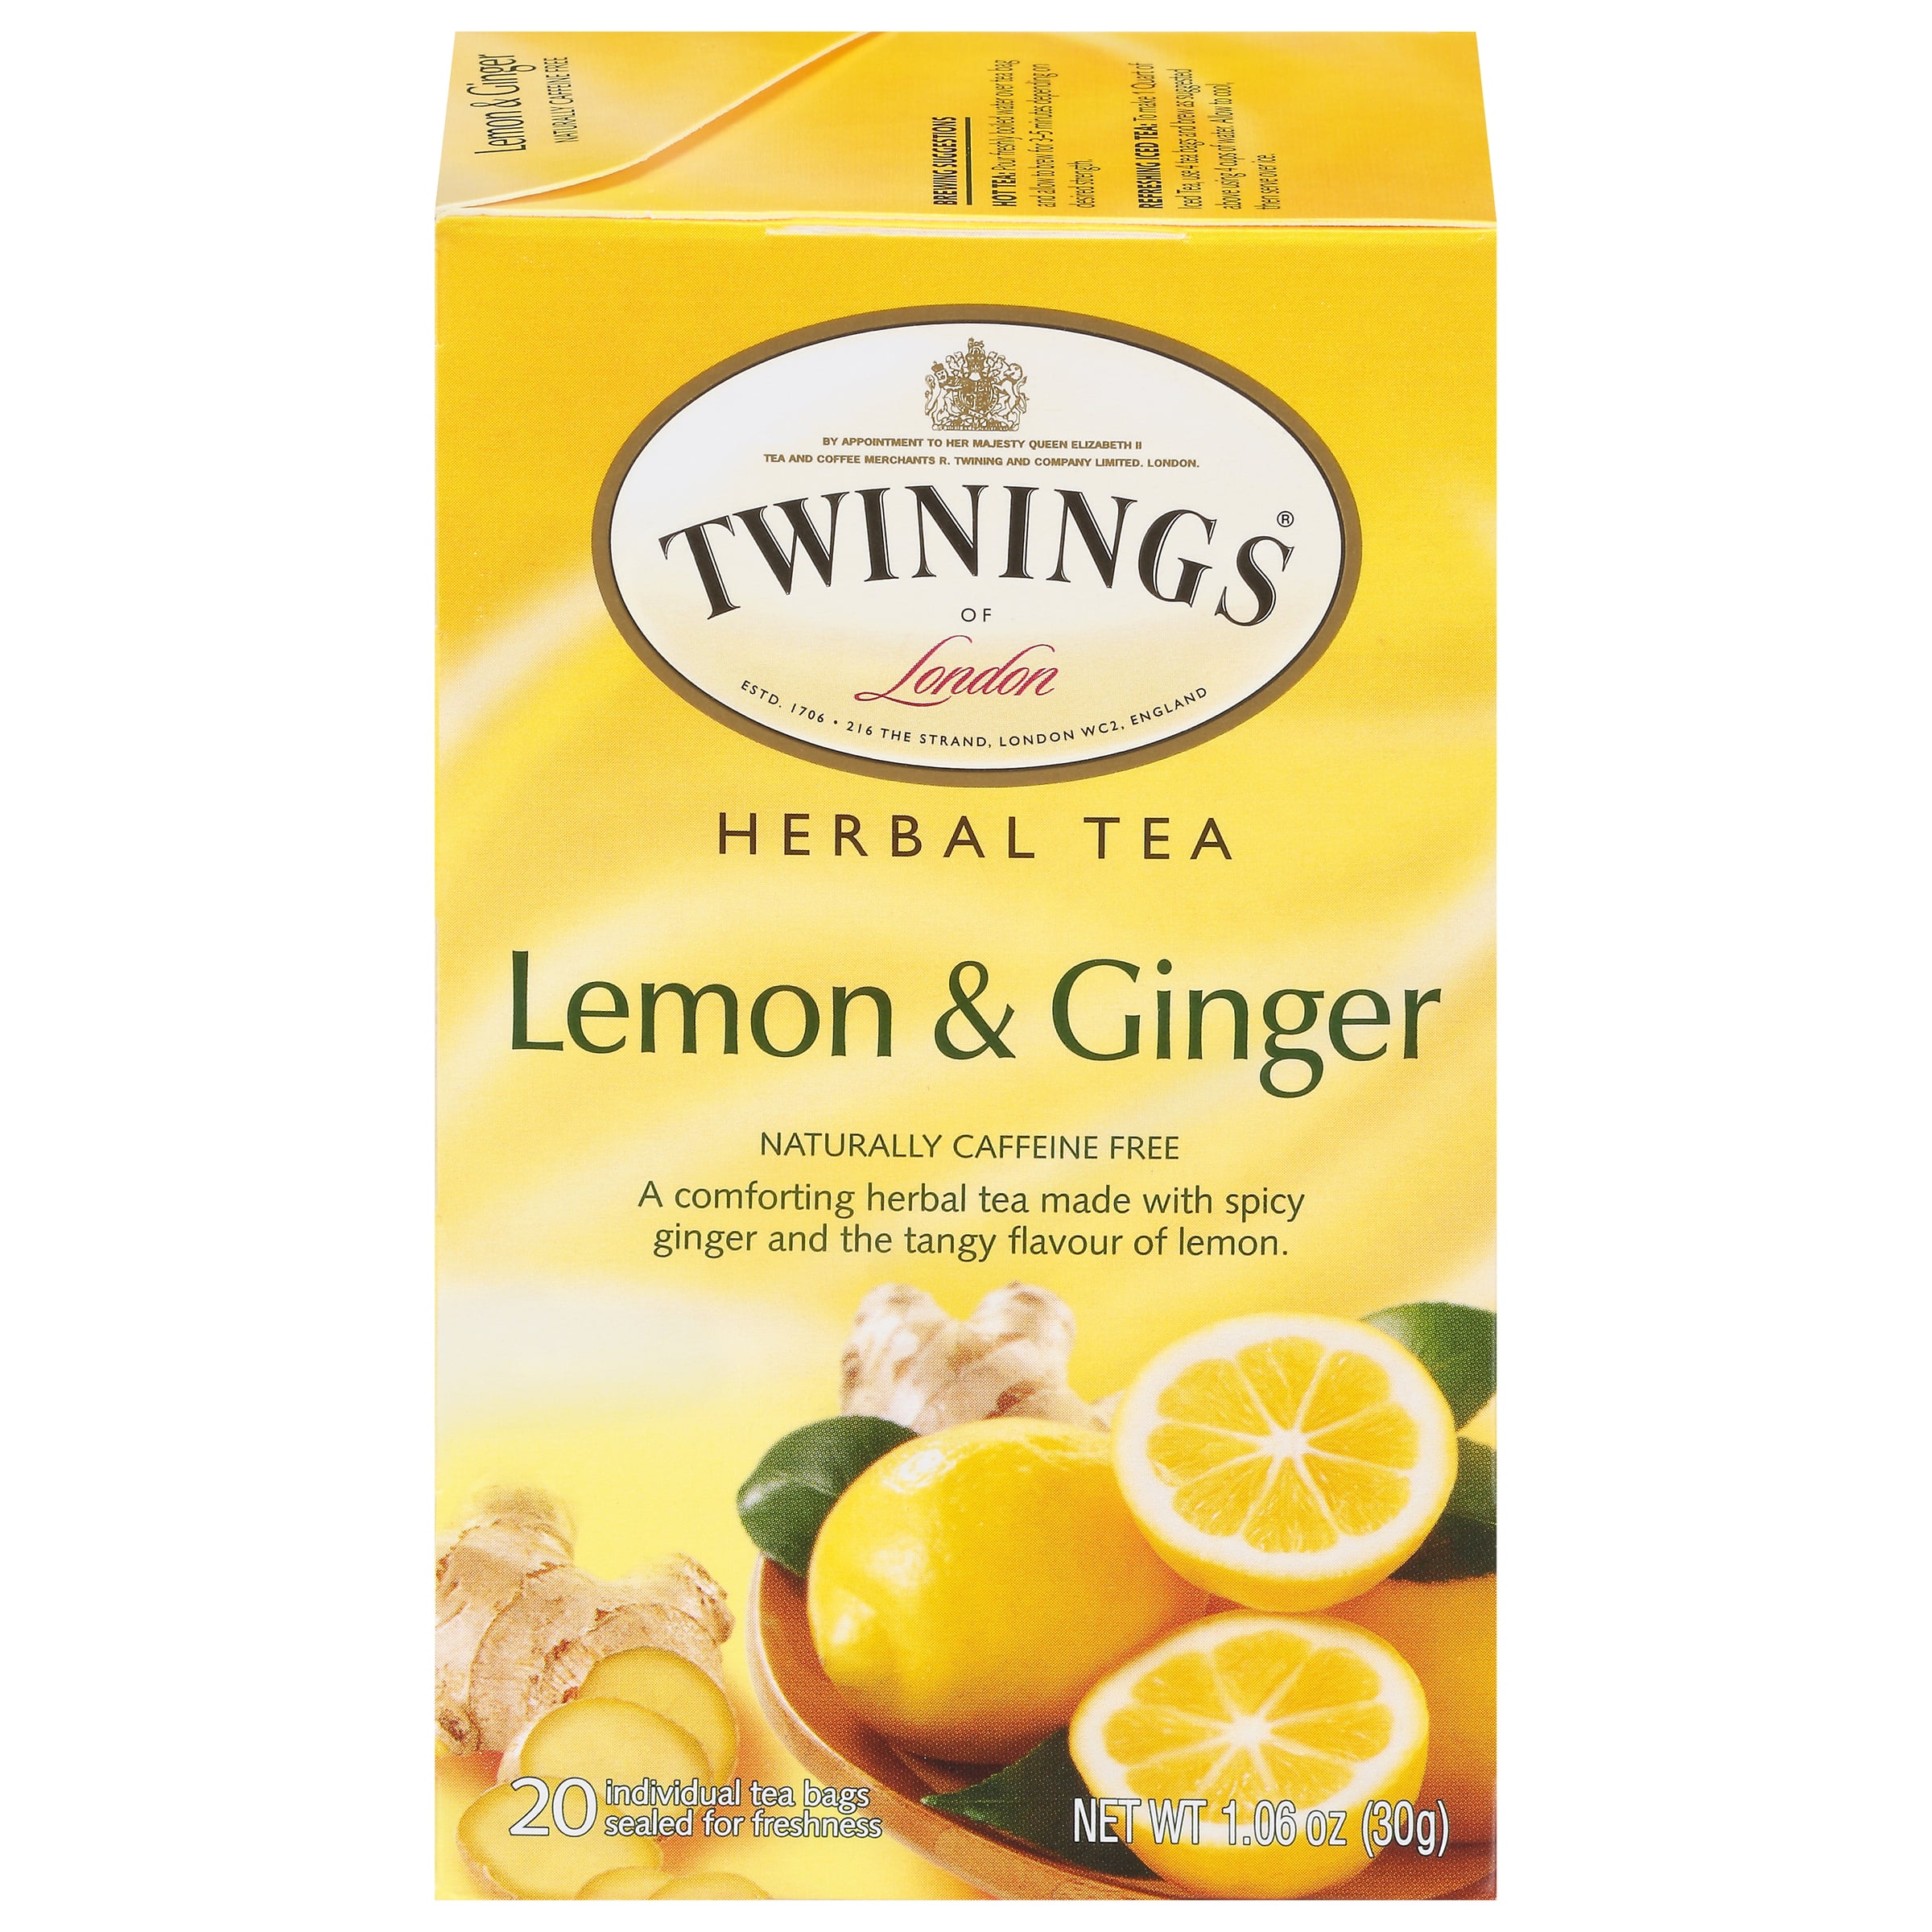 Lemon & Ginger Herbal Tea (20 Tea Bags)